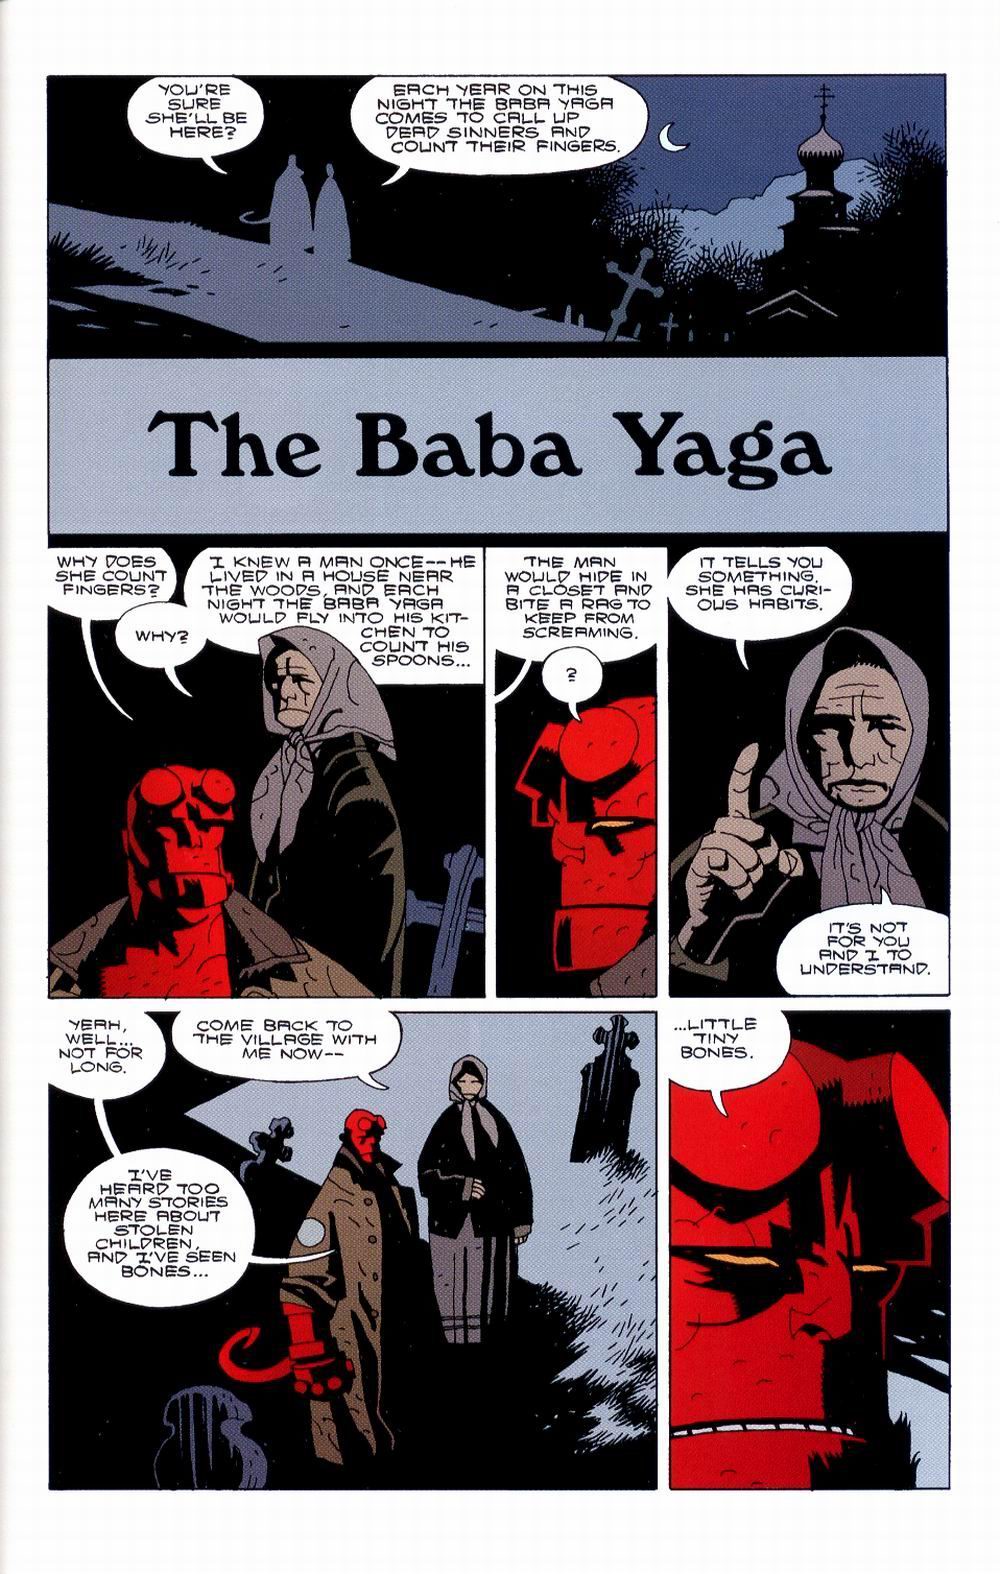 Hellboy+The+Baba+Yaga.jpg